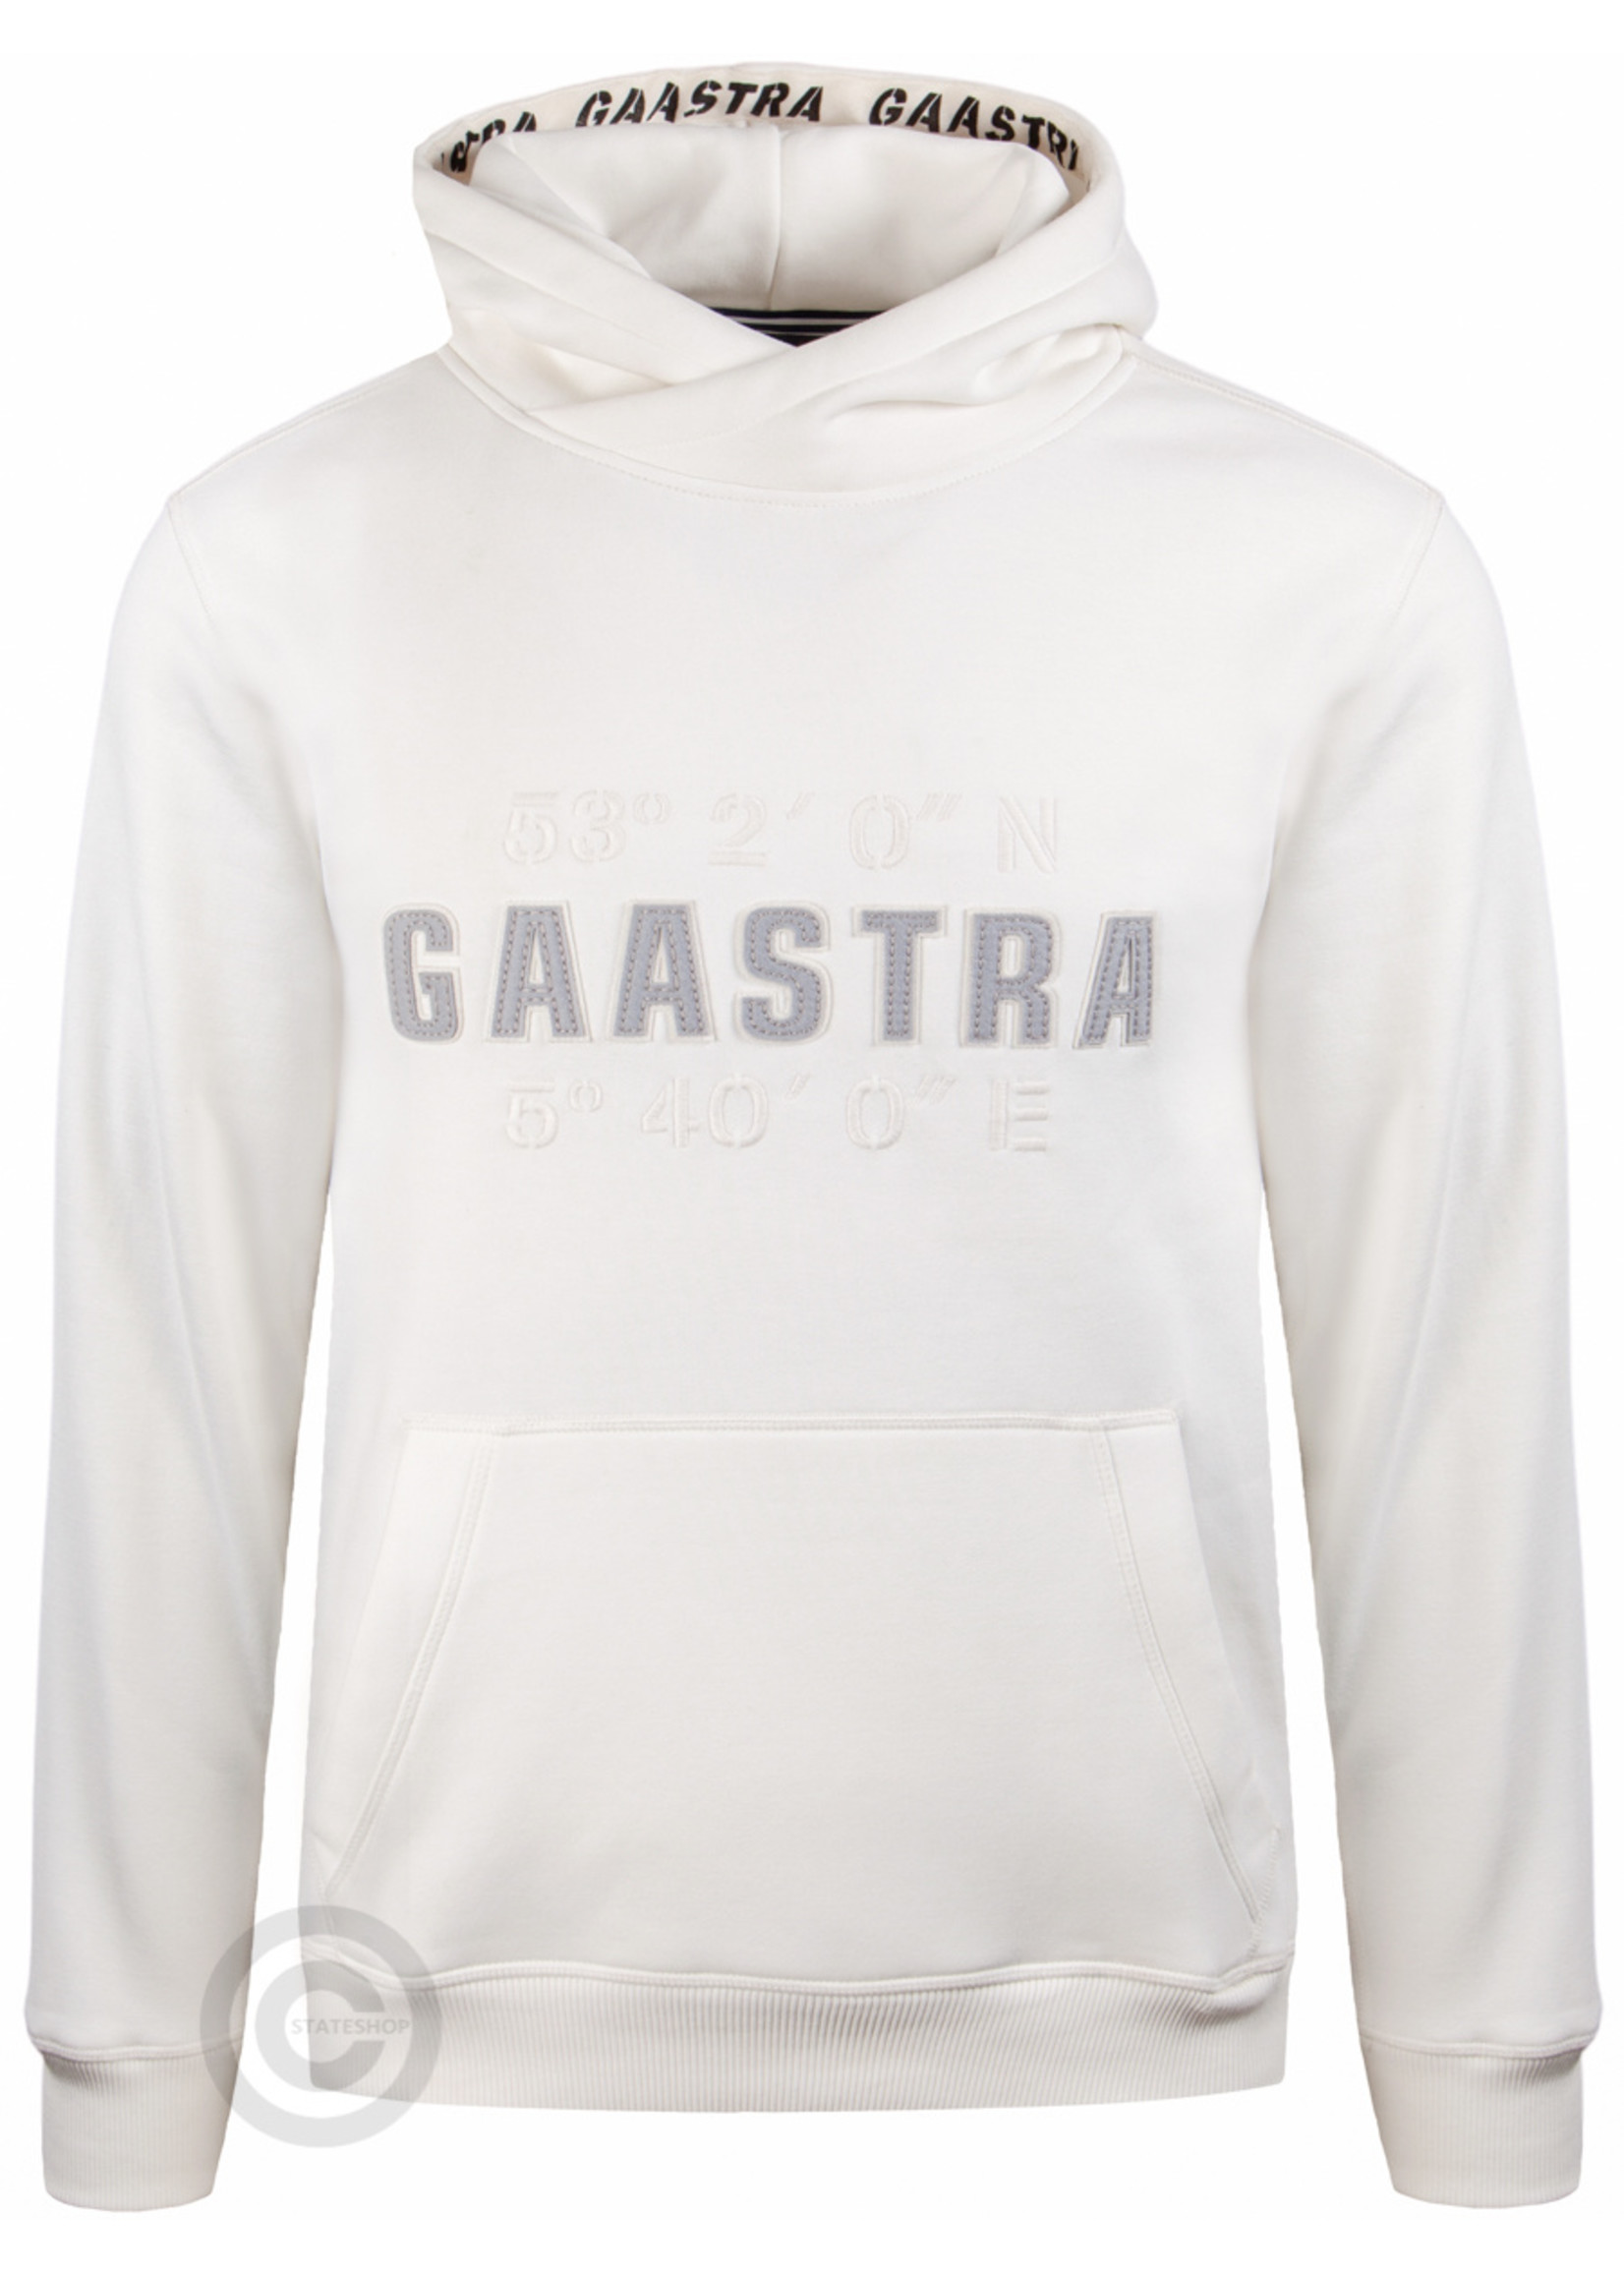 Gaastra Gaastra Herren-Hoodie-Sweatshirt "Artic", Wollweiß